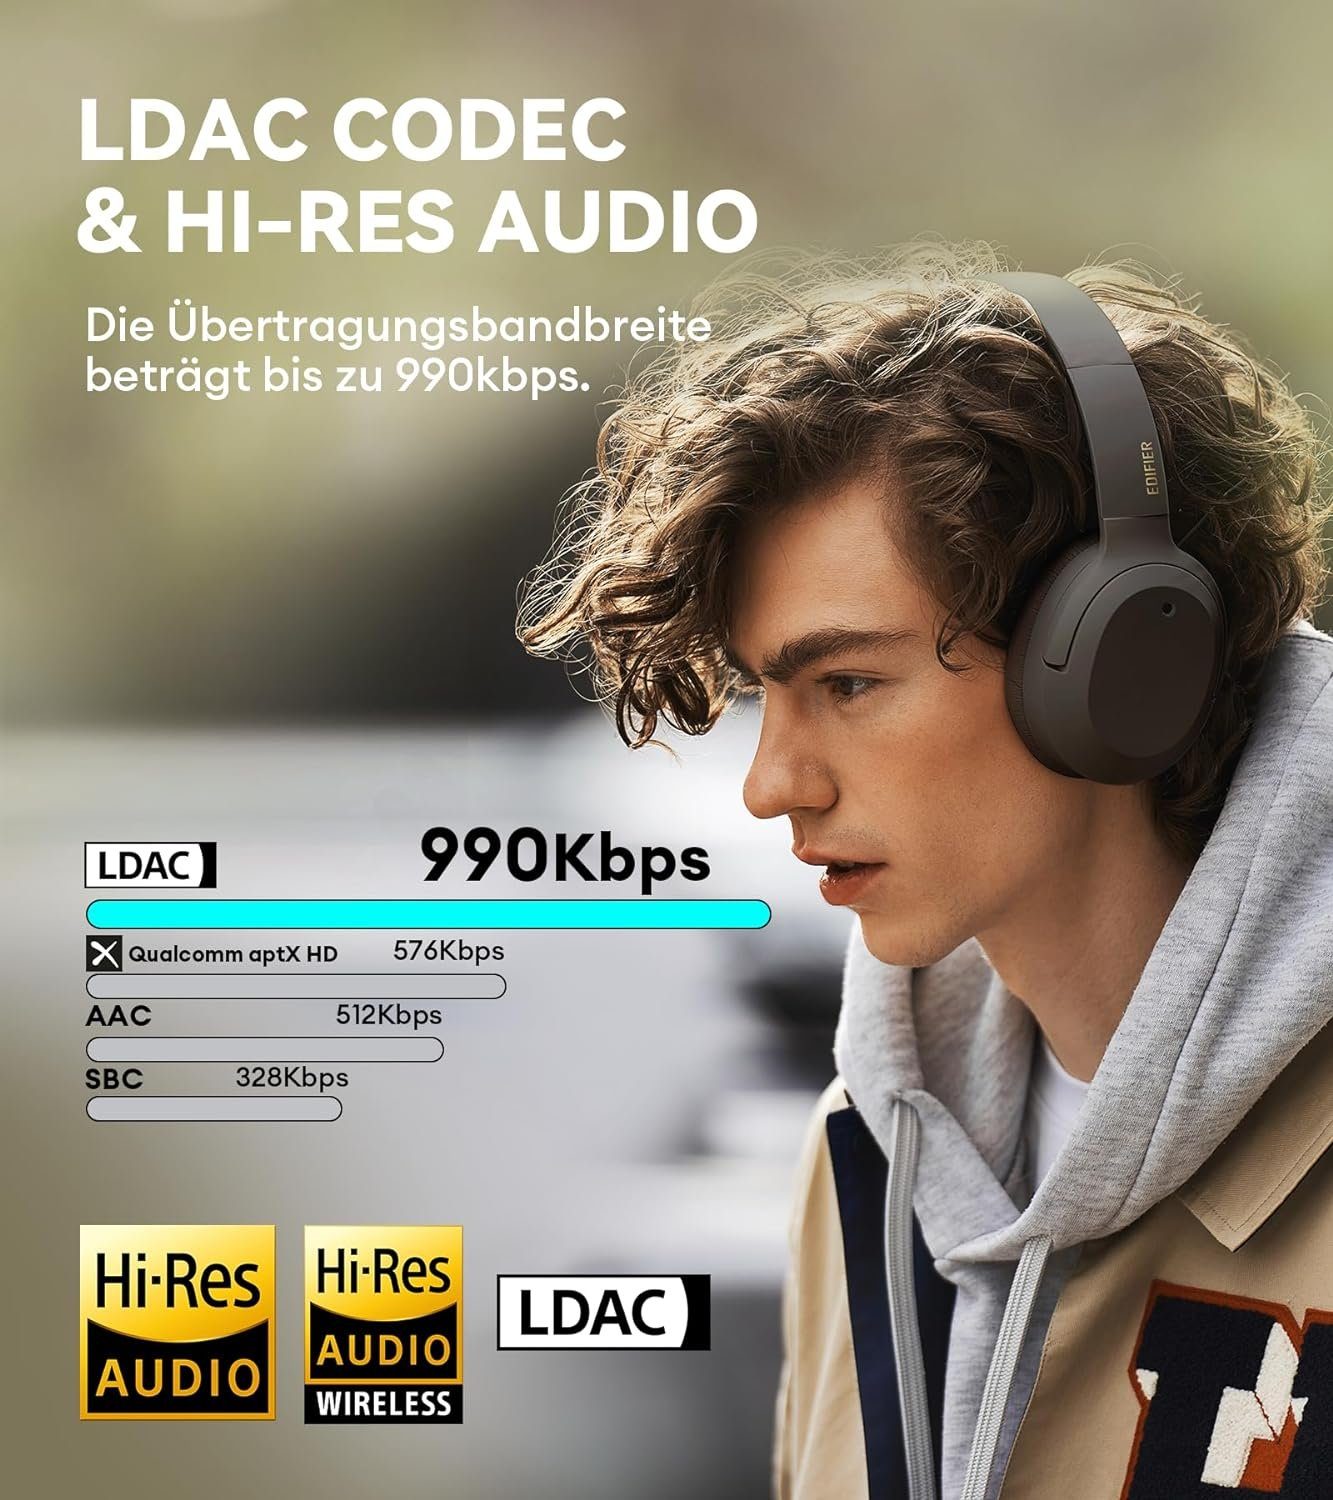 Audio - Wireless & - LDAC Erkennung (Automatische von Edifier® Kabellos, Geräuschunterdrückung Codec Gaming-Headset Wired) Hi-Res Umgebungsgeräuschen,